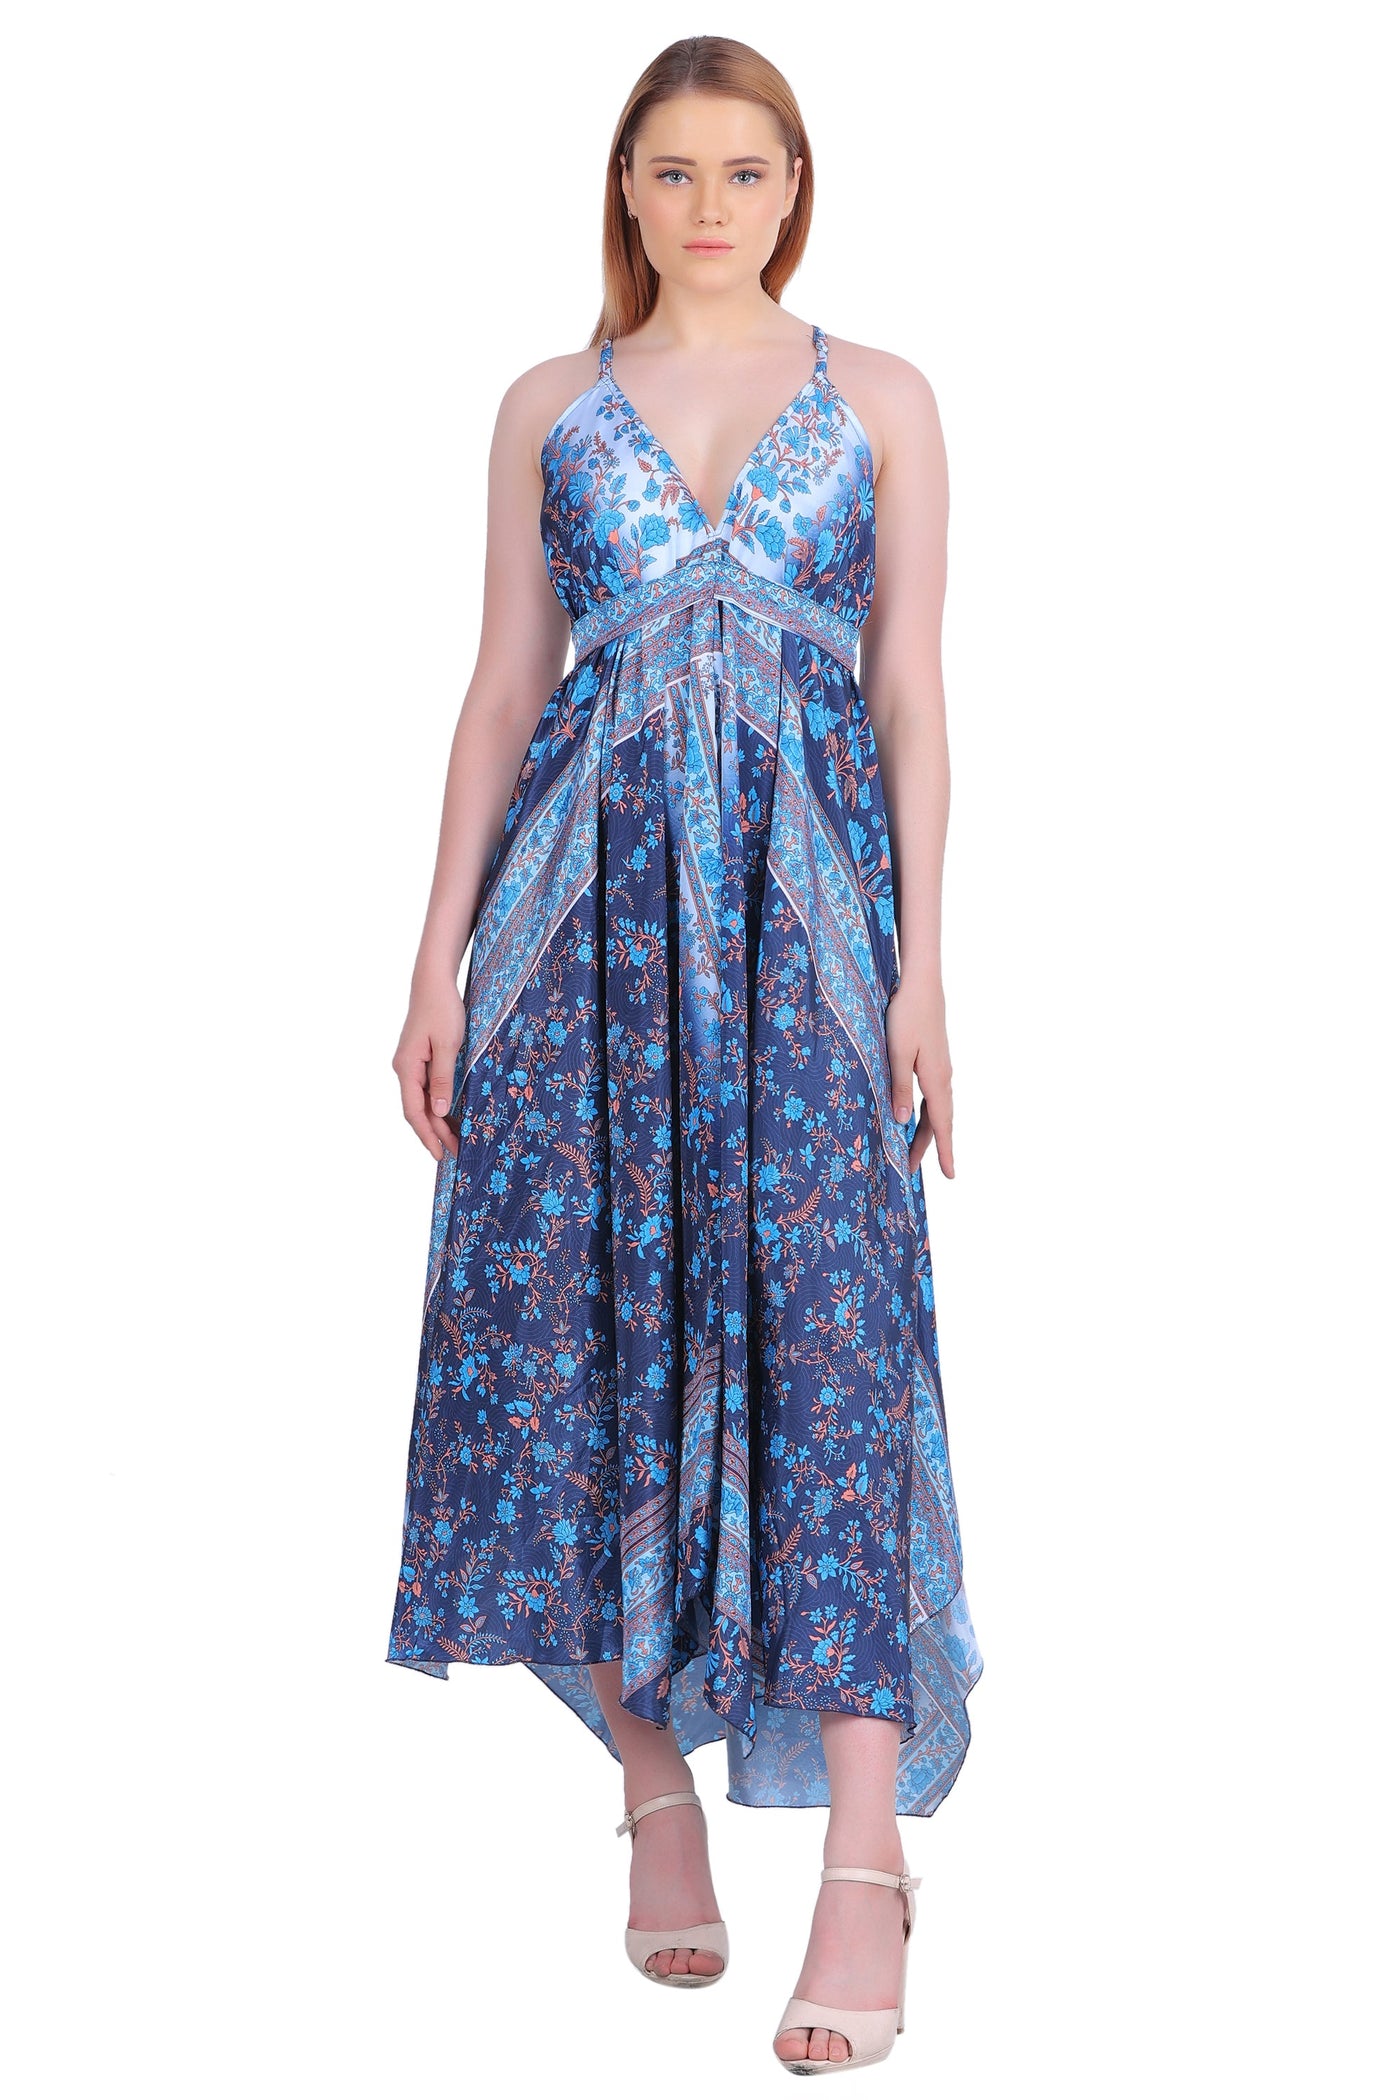 Printed Silk Dress AB-12009 - Advance Apparels Inc